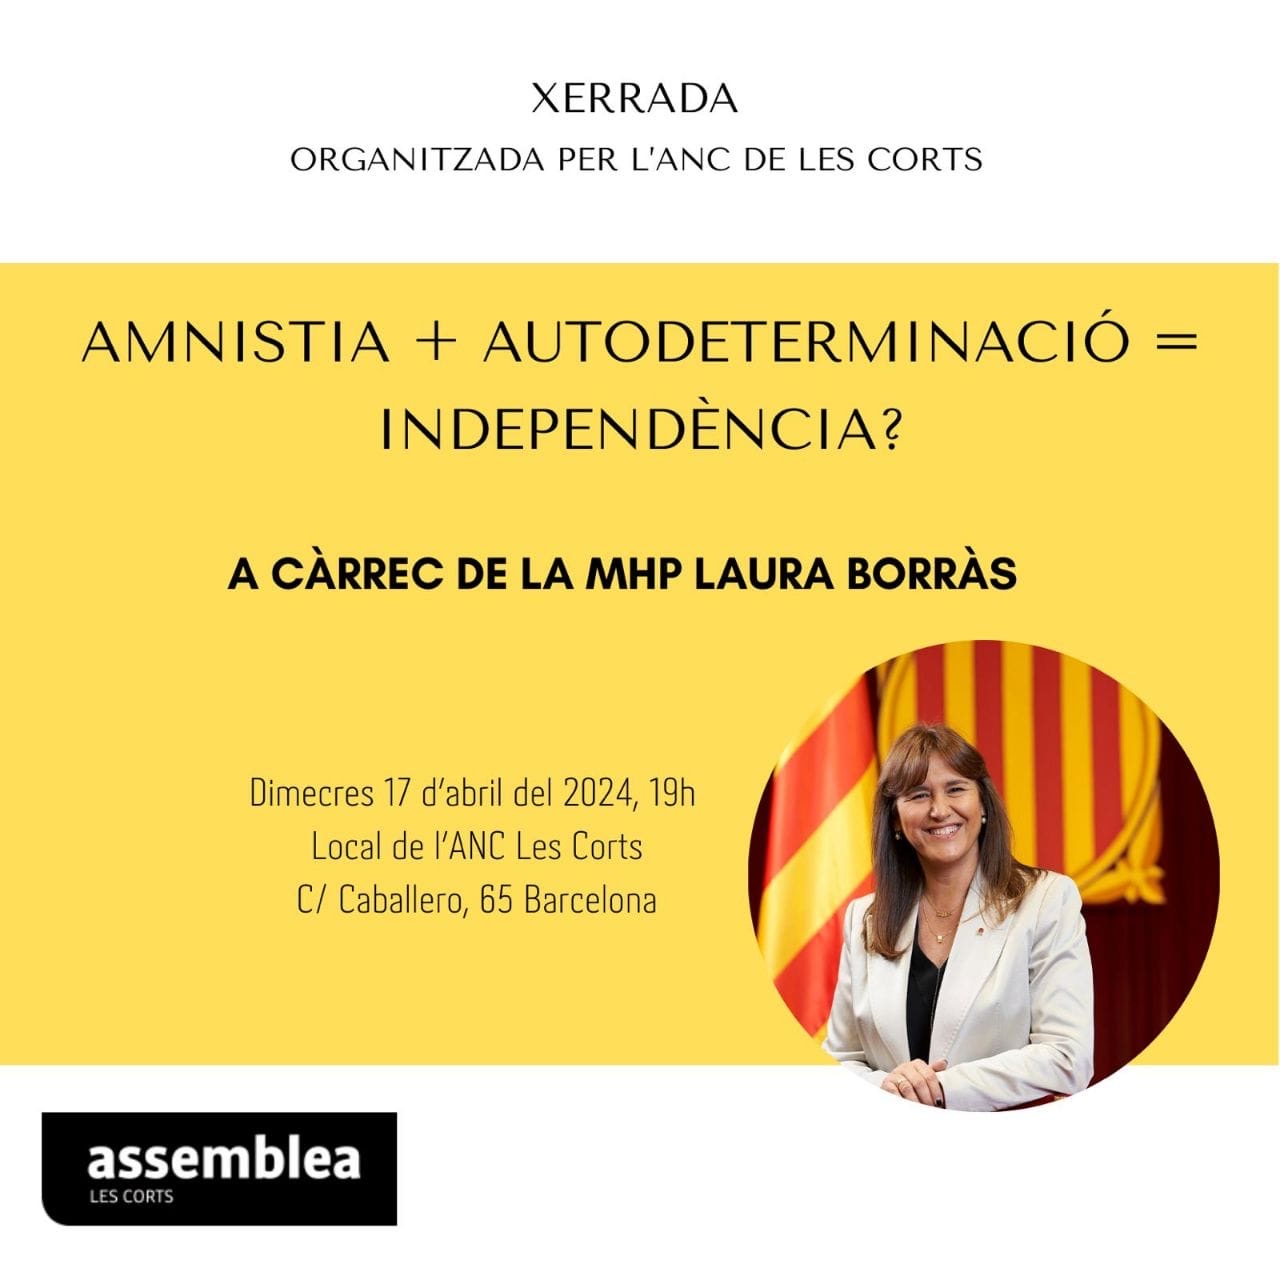 Amnistia + autodeterminació = independència?